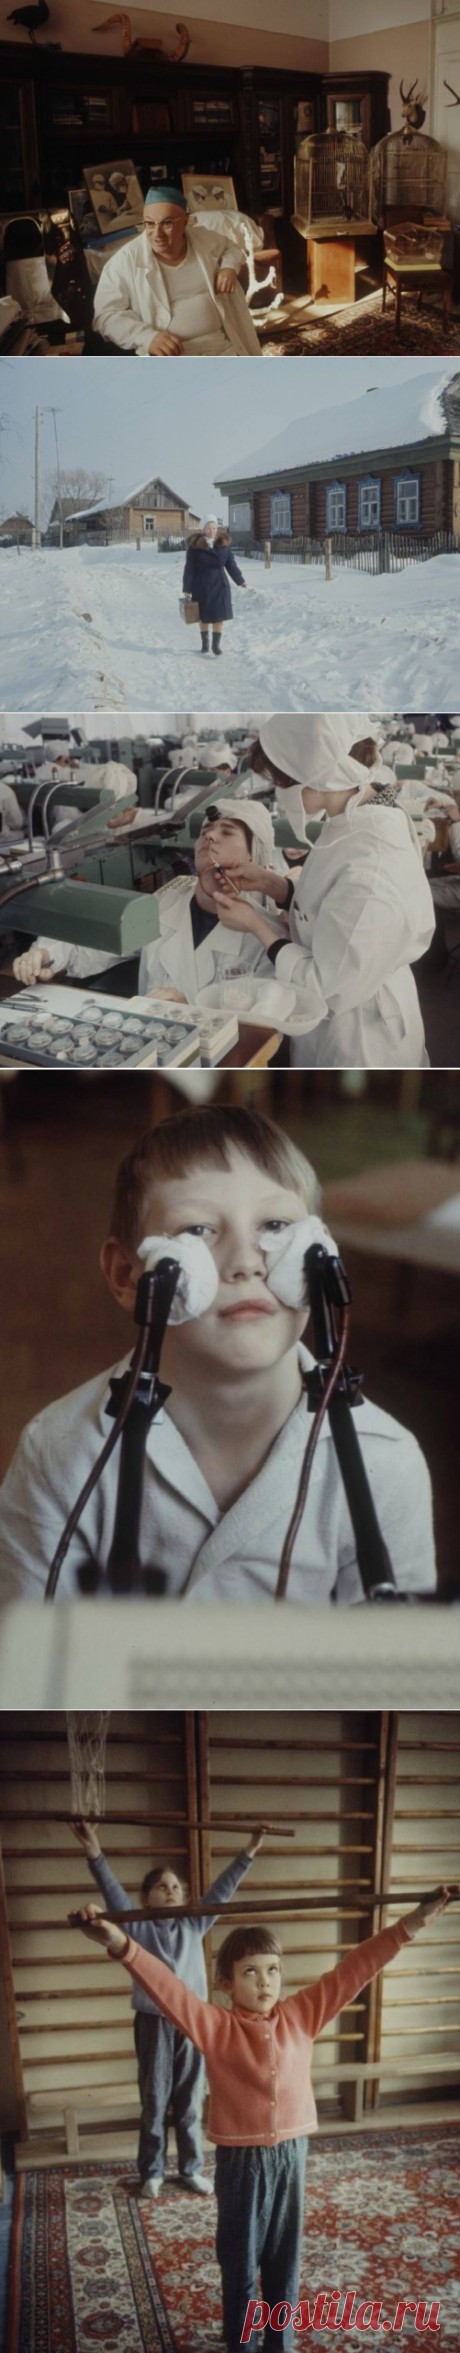 Как это было: колоритные фотографии о том, как жили и работали медицинские работники в СССР в 1970-х